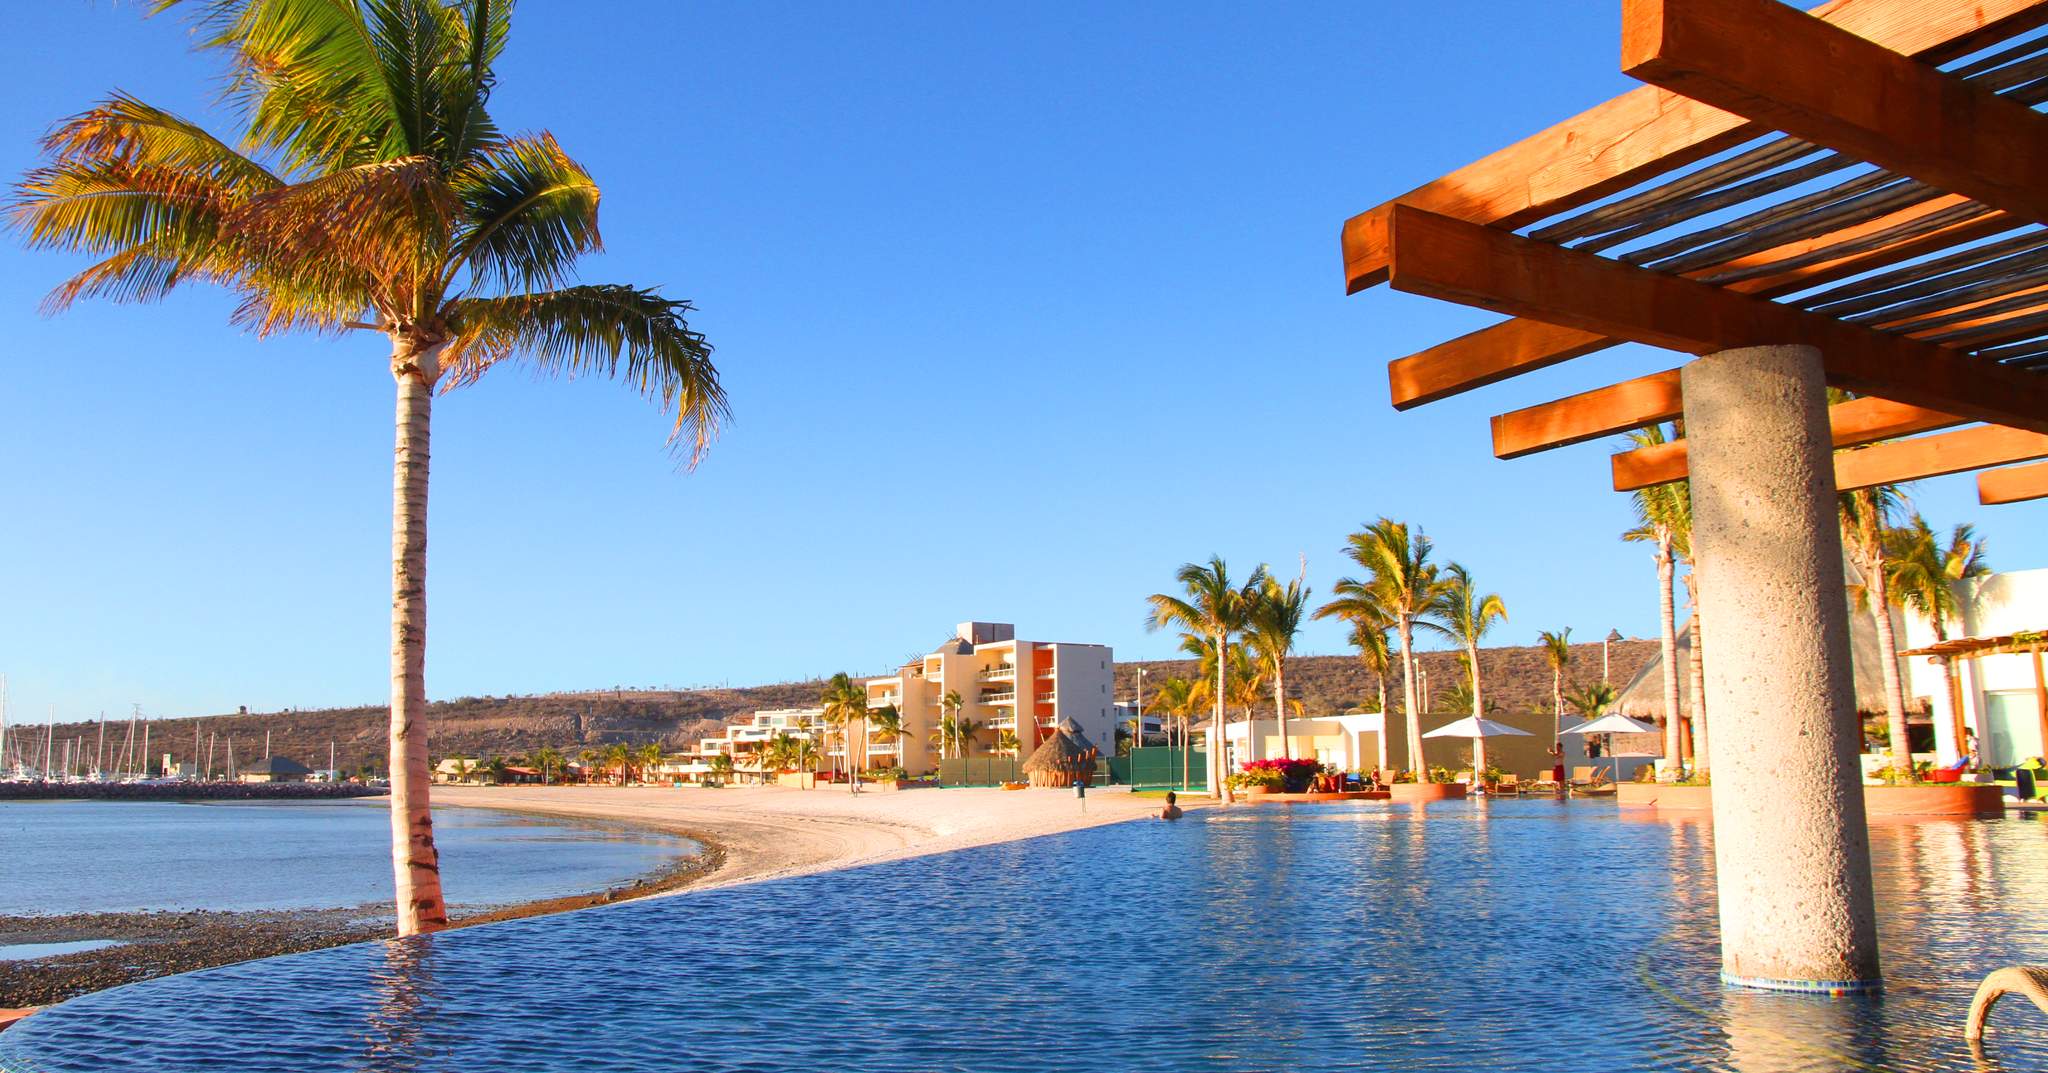 CostaBaja Resort, Marina & Spa in La Paz, Baja California Sur, Mexico